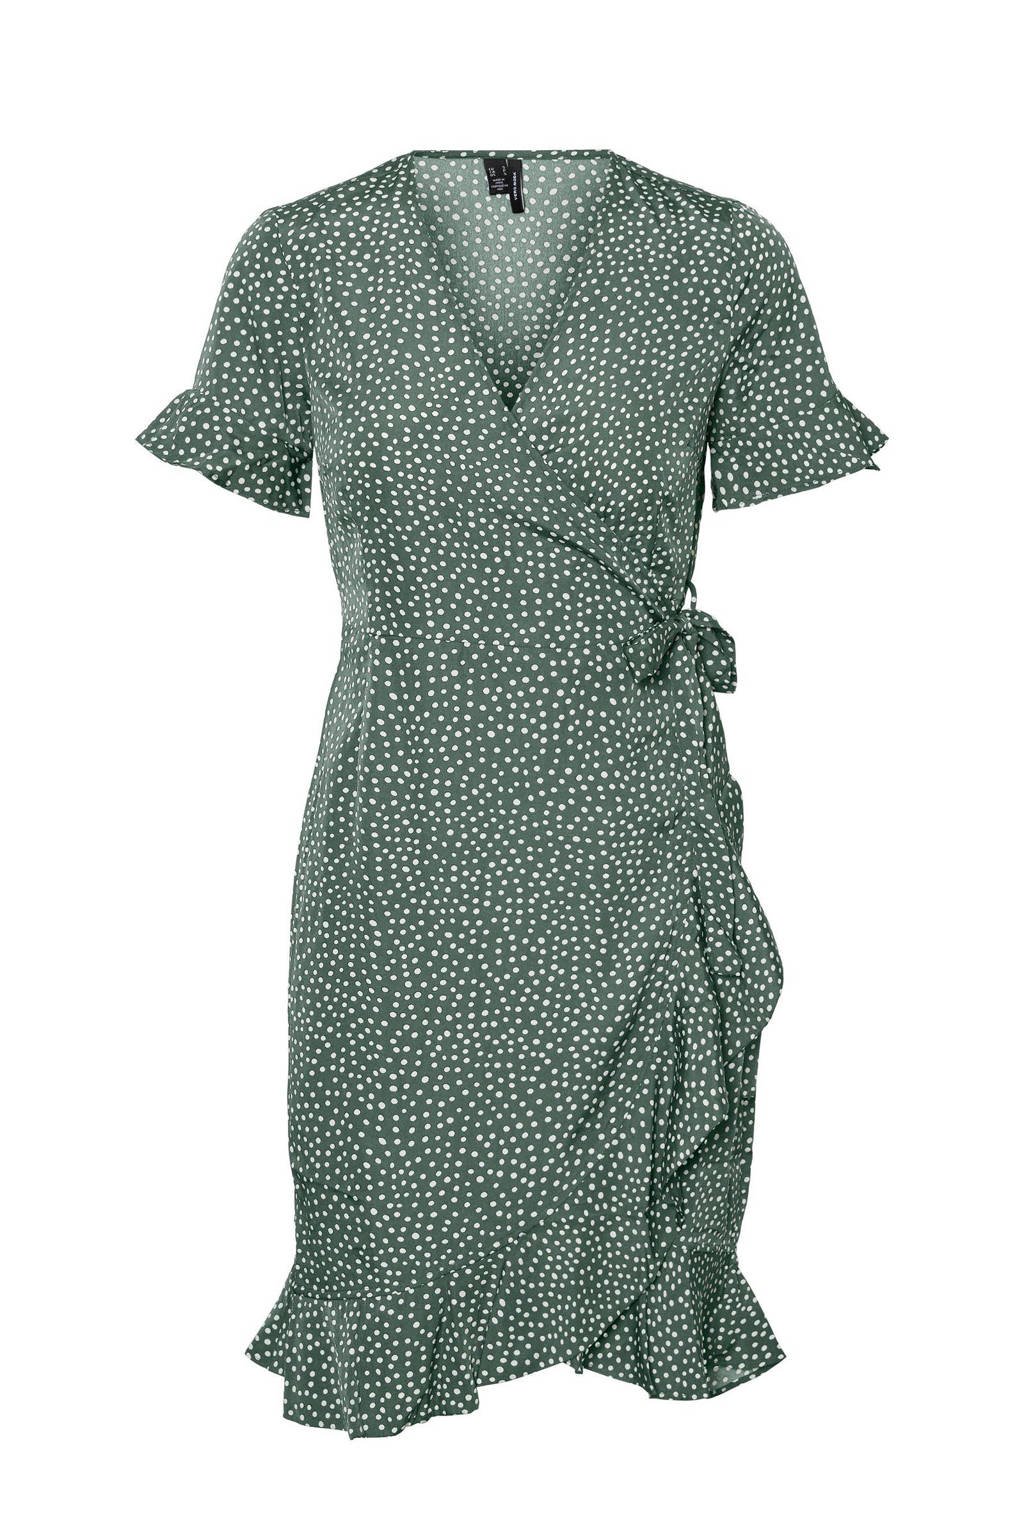 Groene dames VERO MODA wikkeljurk van gerecycled polyester met stippenprint, korte mouwen en V-hals